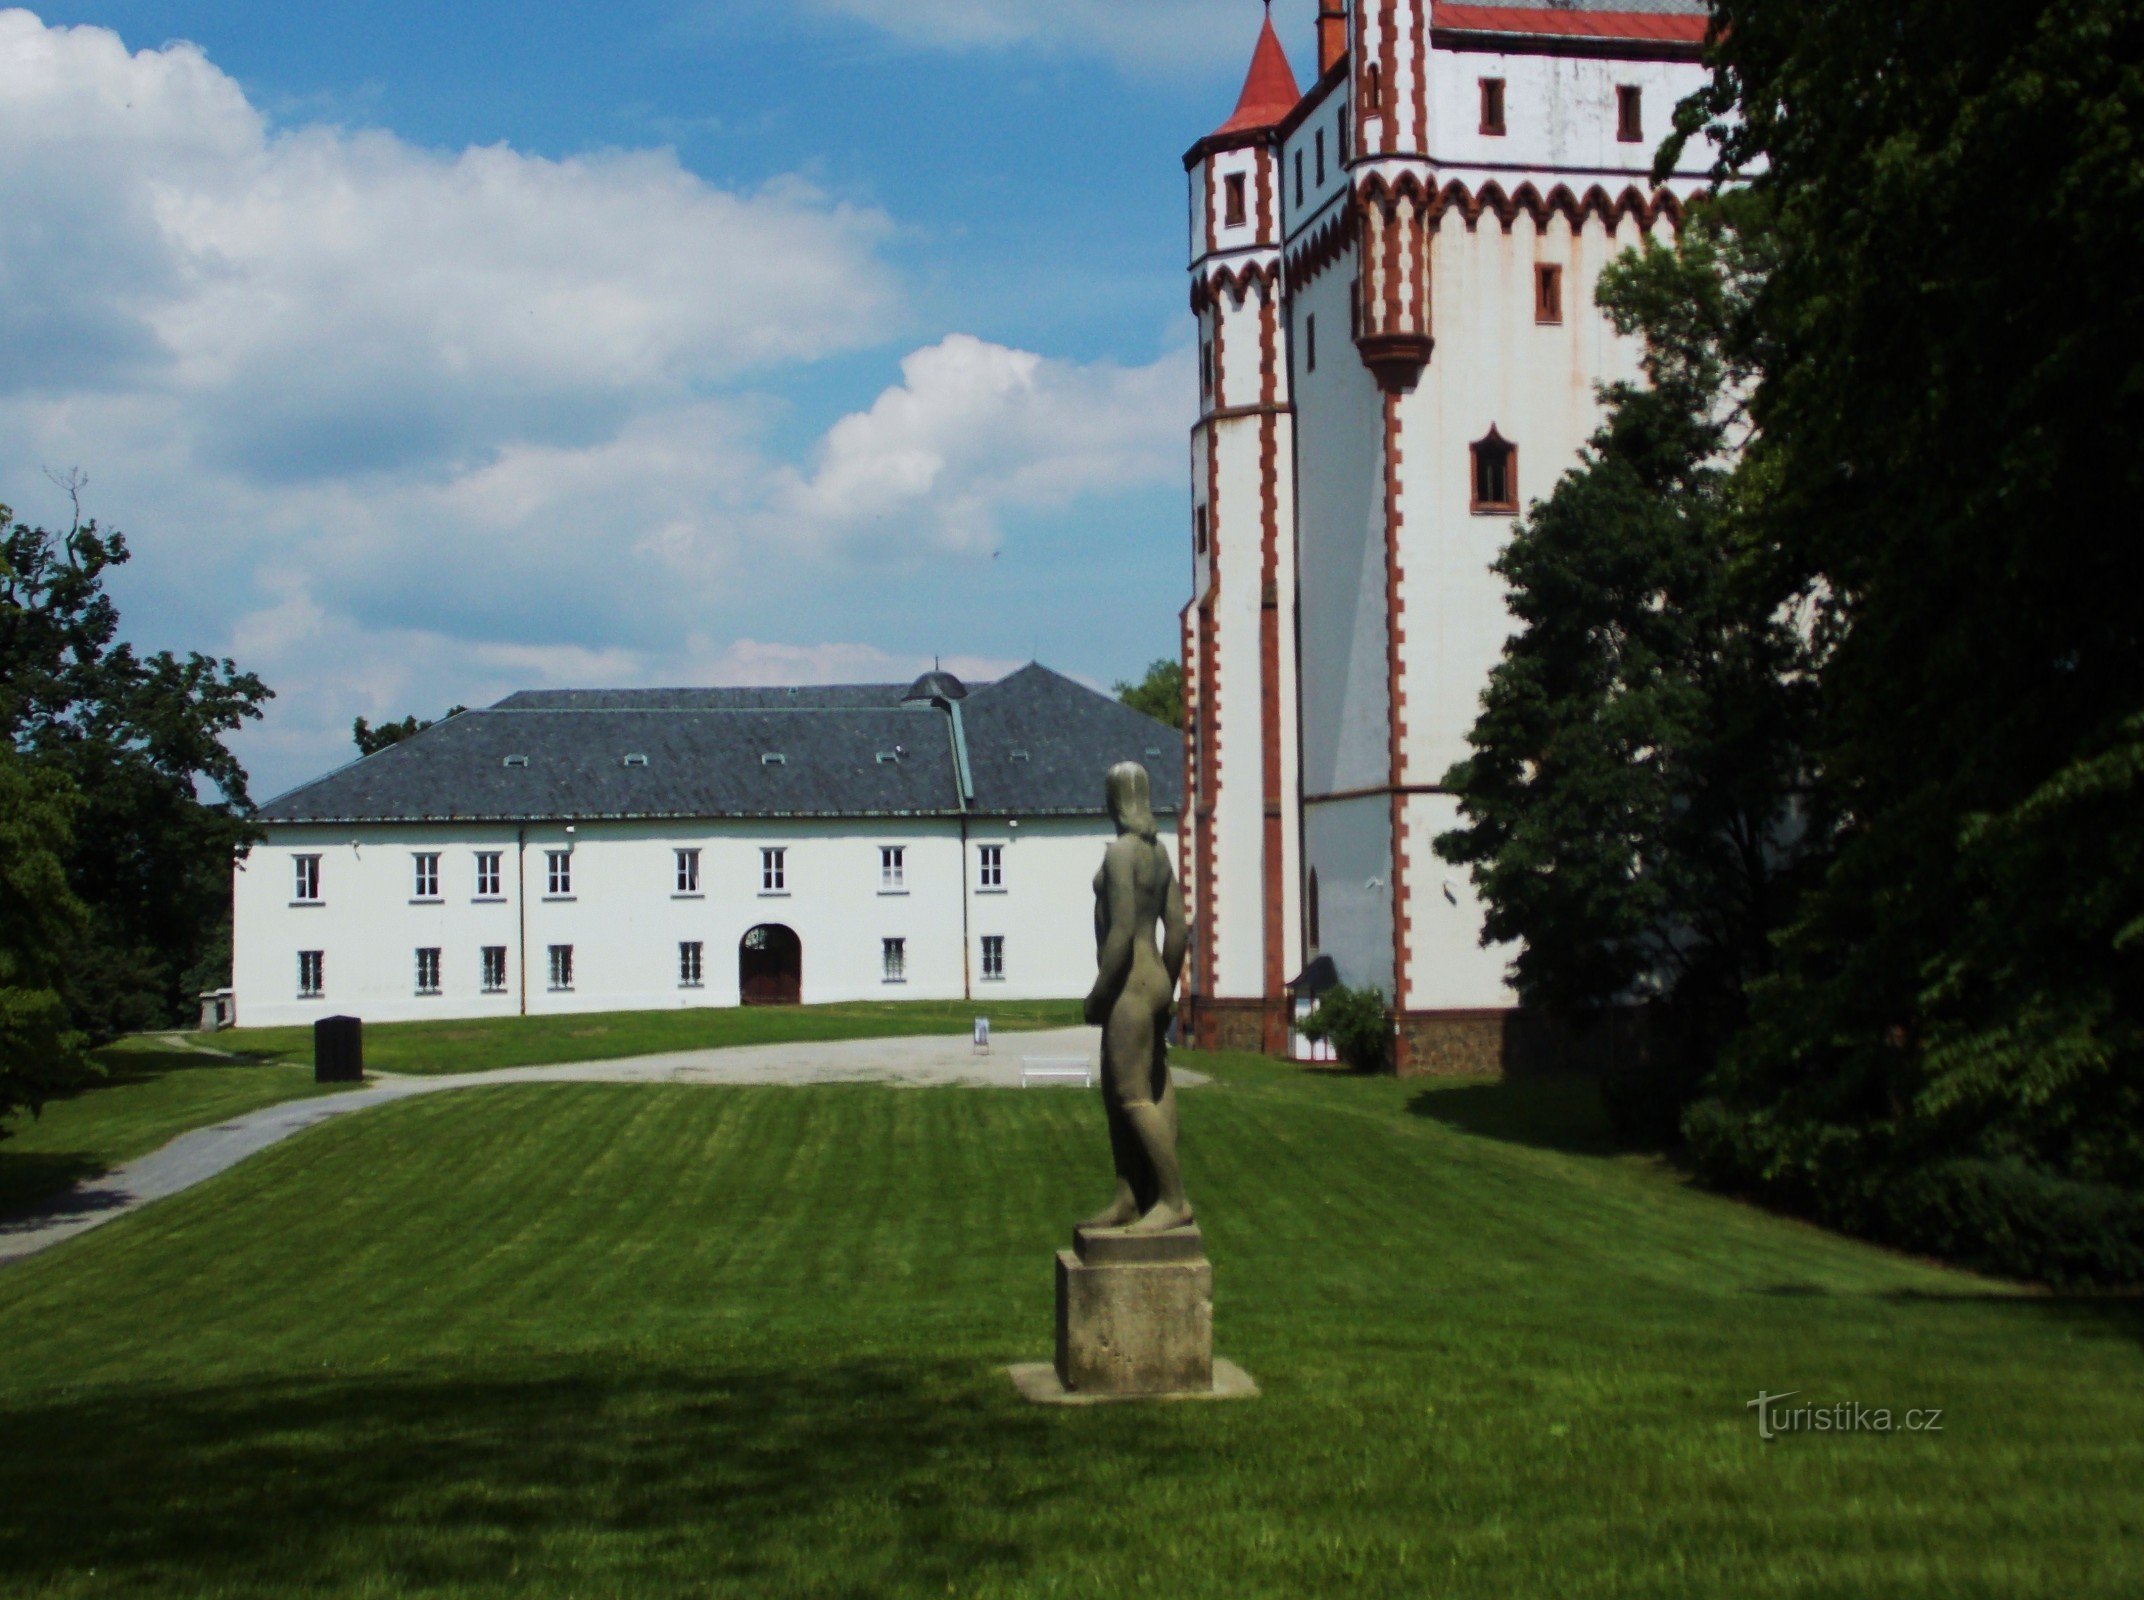 Le château d'eau vive dans le parc du château de Hradec nad Moravicí